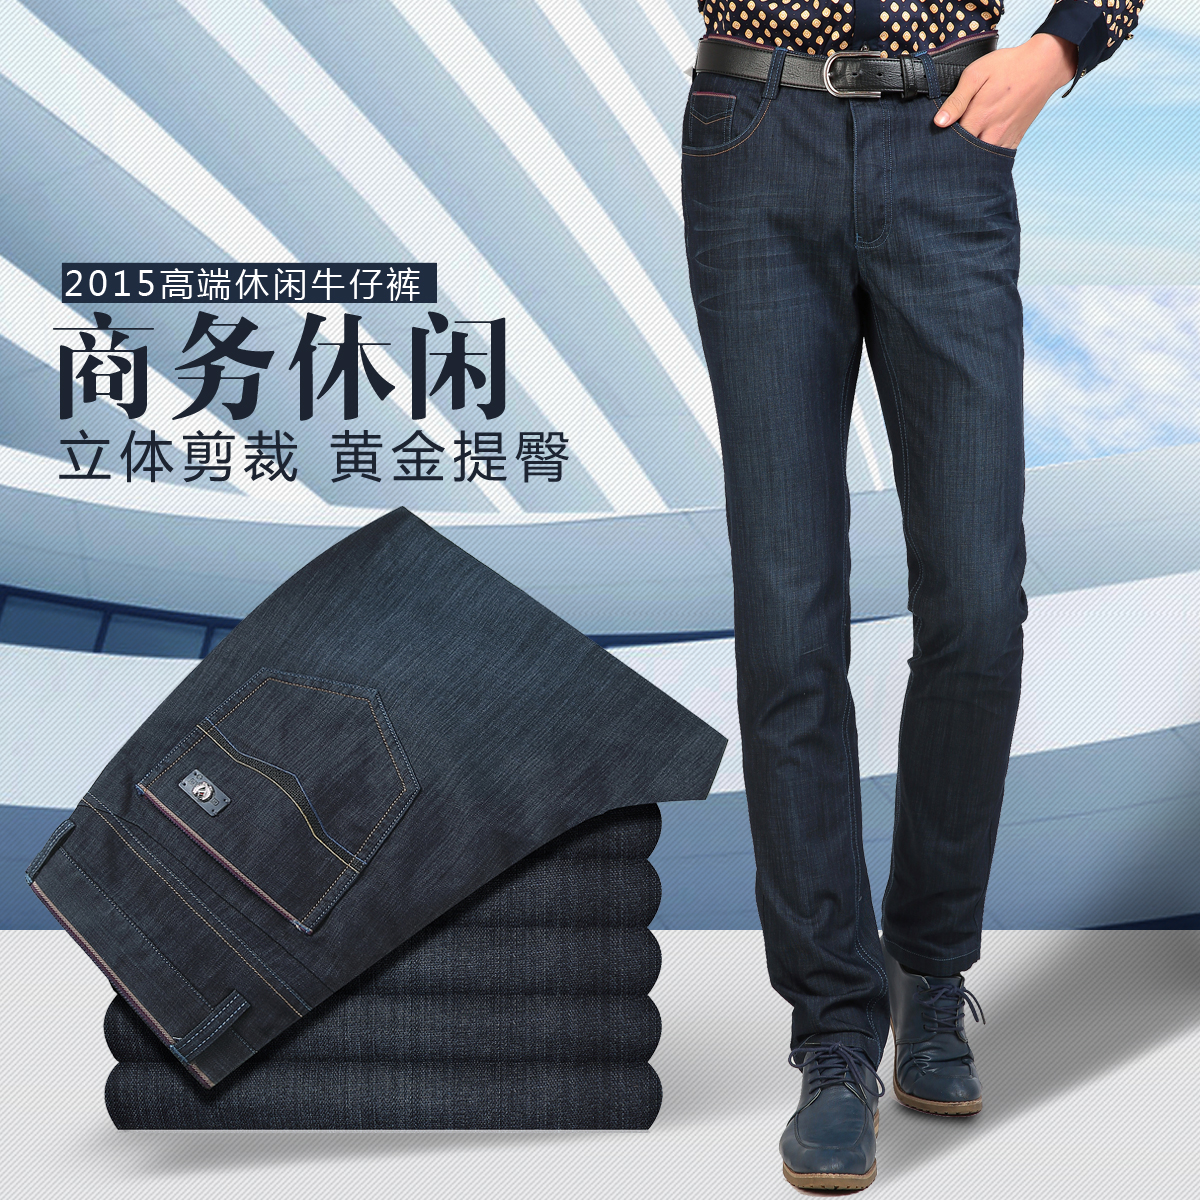 【商务绅士】2015新款直筒商务休闲牛仔裤苹果正品大码中年裤子